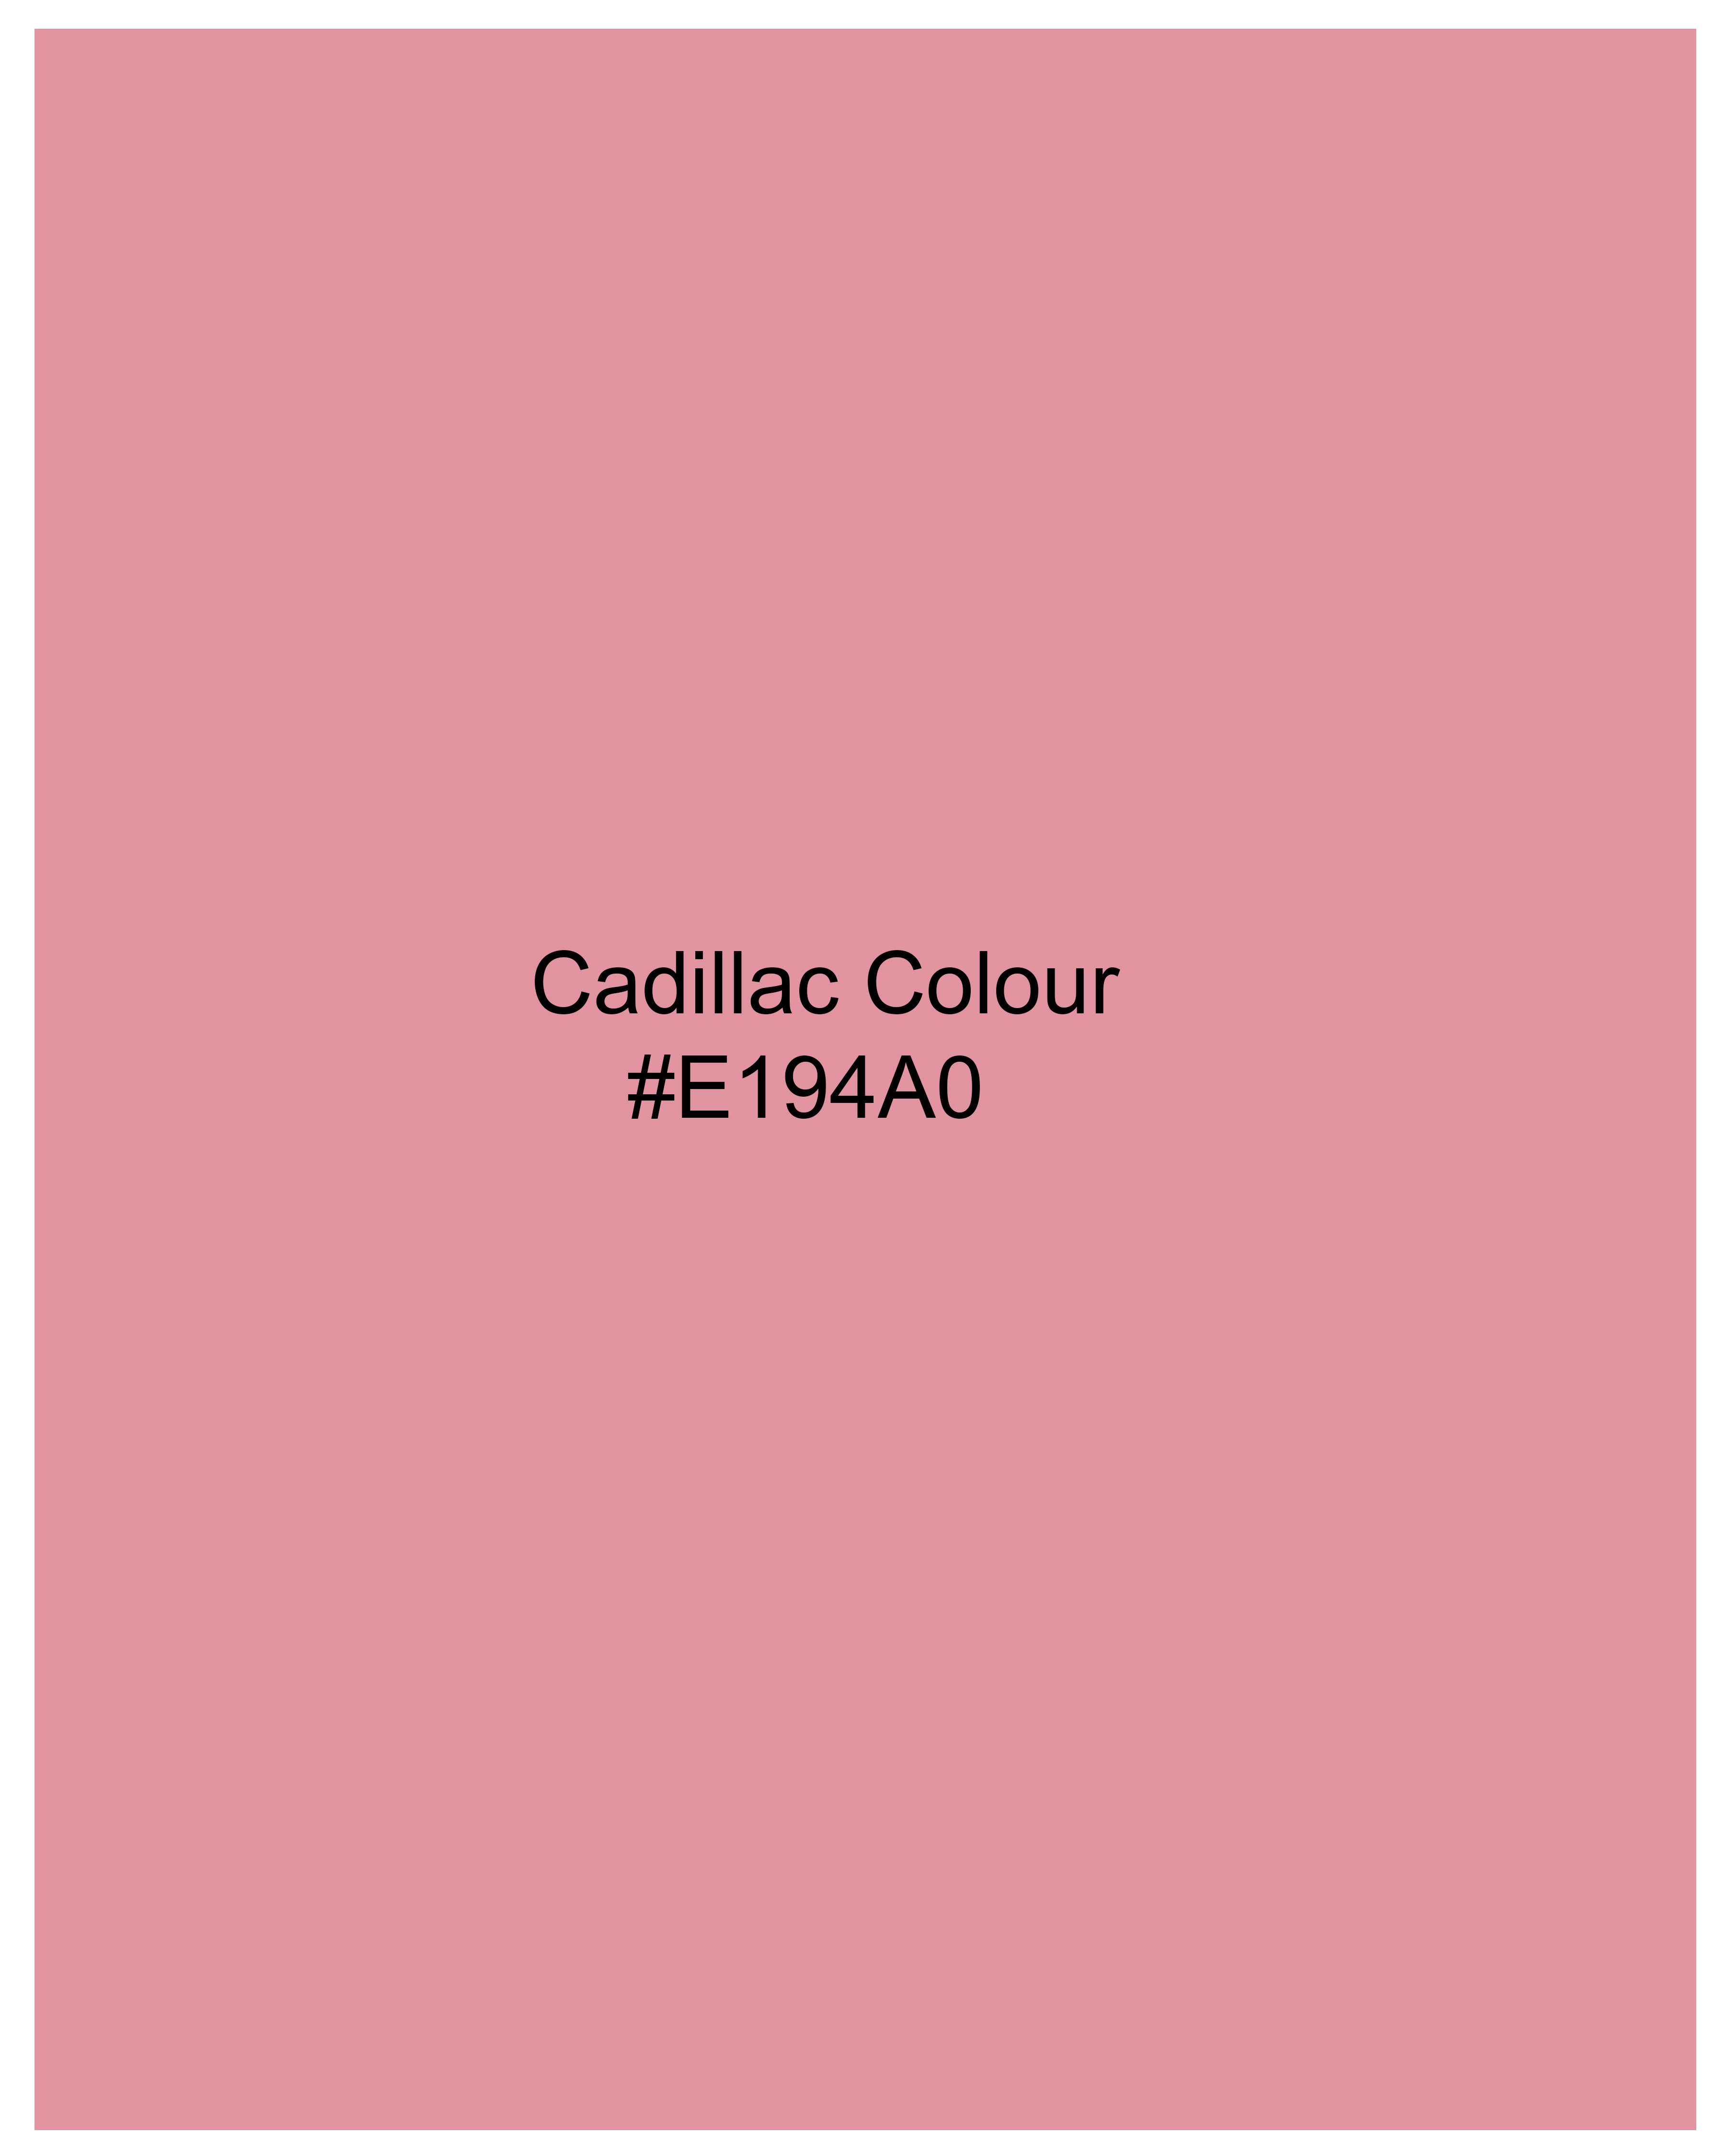 Cadillac Pink Chambray Textured Shirt 9497-M-38, 9497-M-H-38, 9497-M-39, 9497-M-H-39, 9497-M-40, 9497-M-H-40, 9497-M-42, 9497-M-H-42, 9497-M-44, 9497-M-H-44, 9497-M-46, 9497-M-H-46, 9497-M-48, 9497-M-H-48, 9497-M-50, 9497-M-H-50, 9497-M-52, 9497-M-H-52